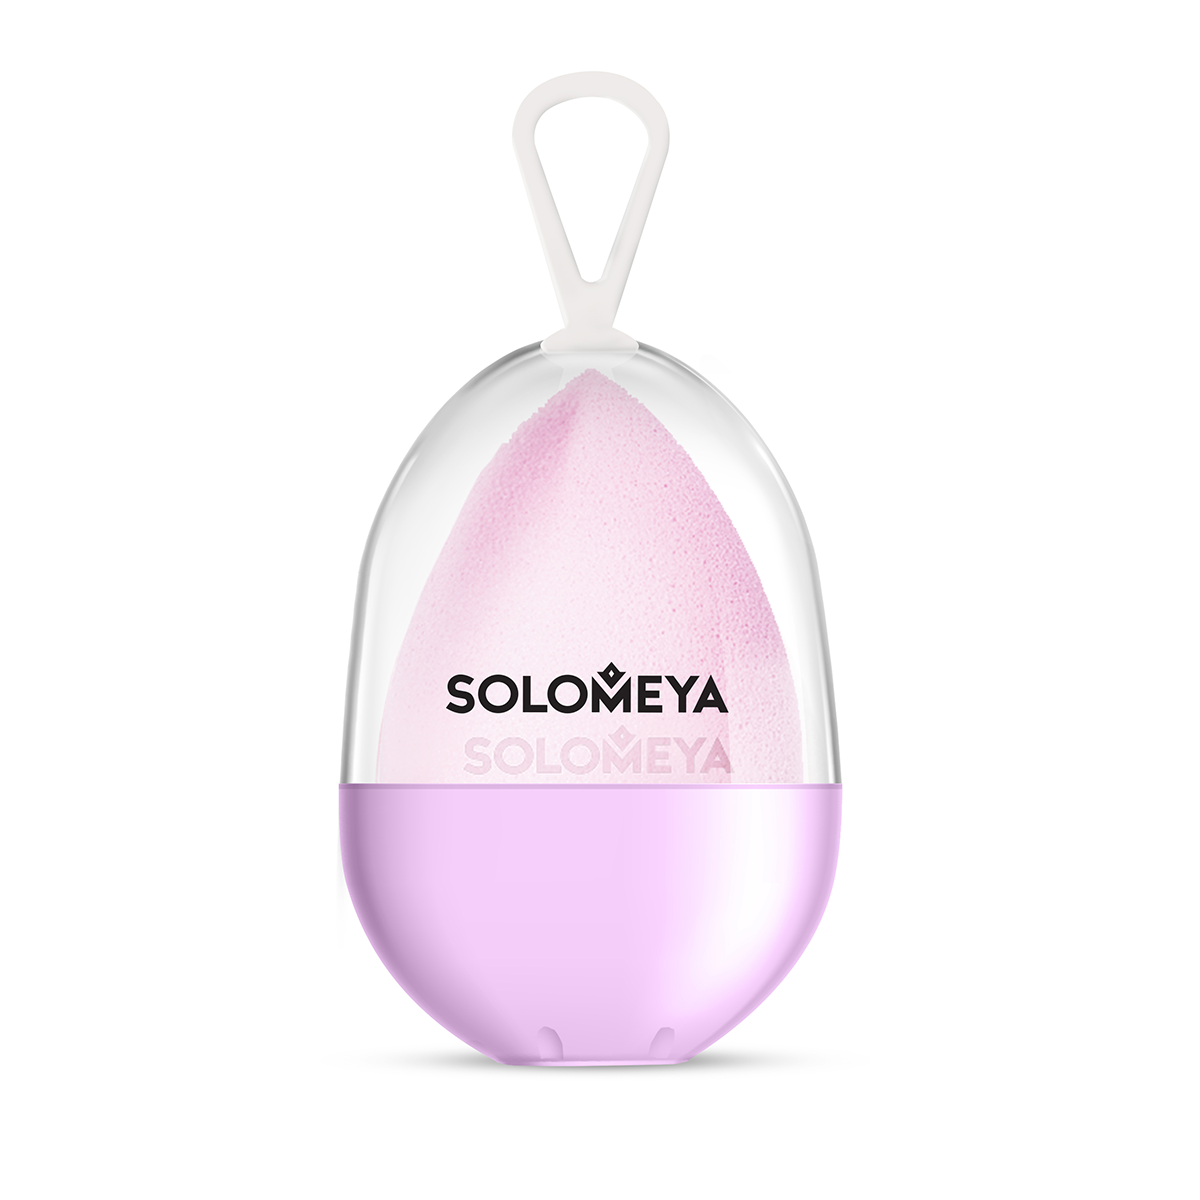 SOLOMEYA Спонж косметический для макияжа со срезом лиловый / Flat End blending sponge,  lilac 1 шт